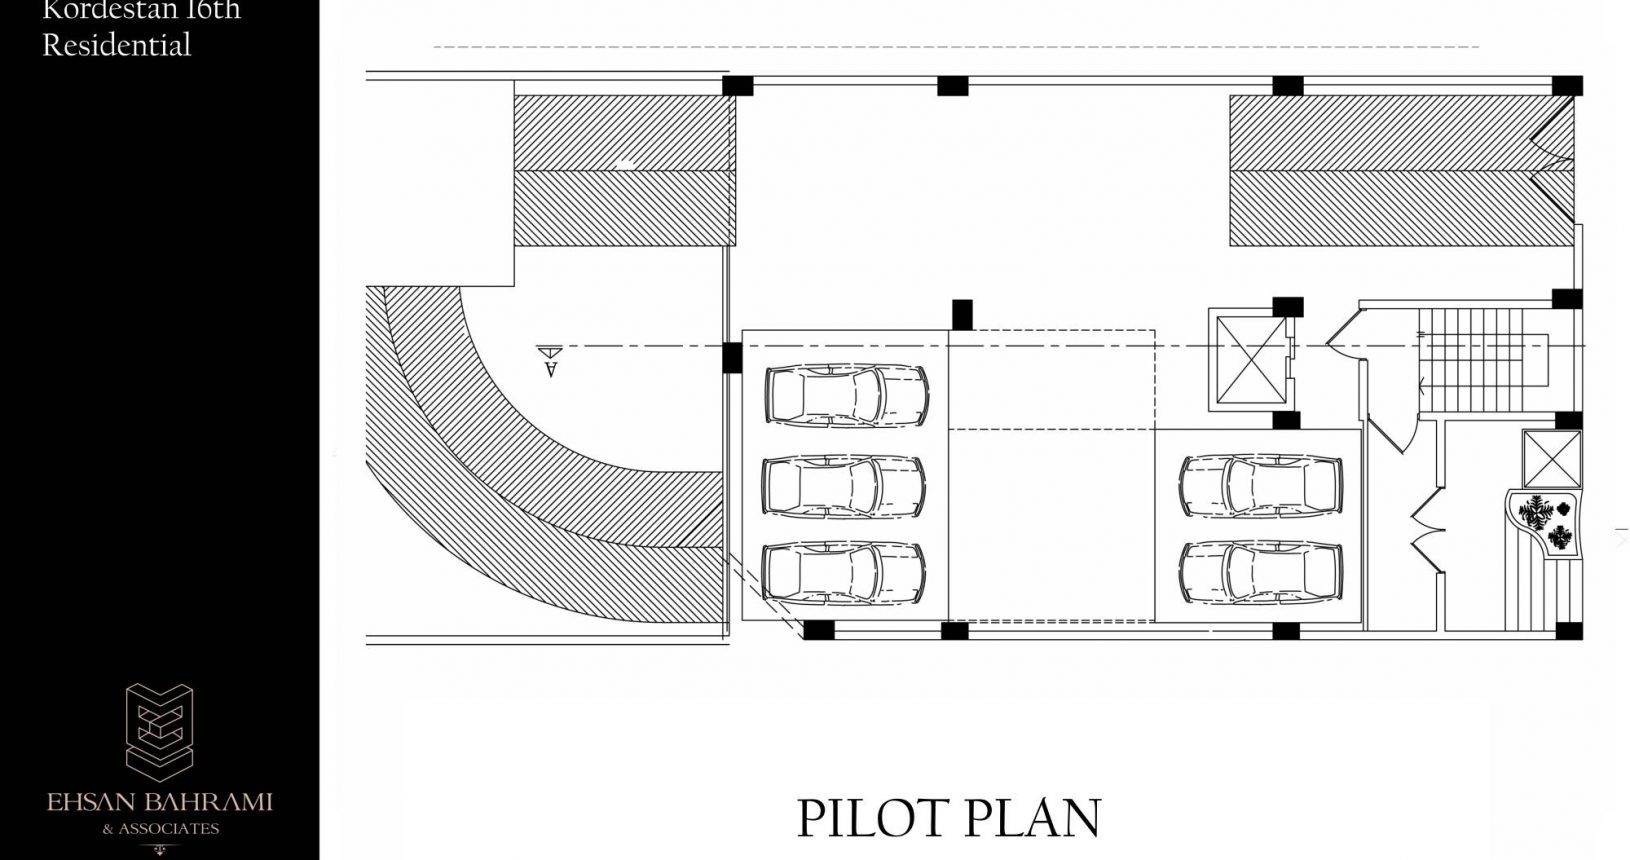 16th Kordestan Ehsan Bahrami (Pilot Plan)